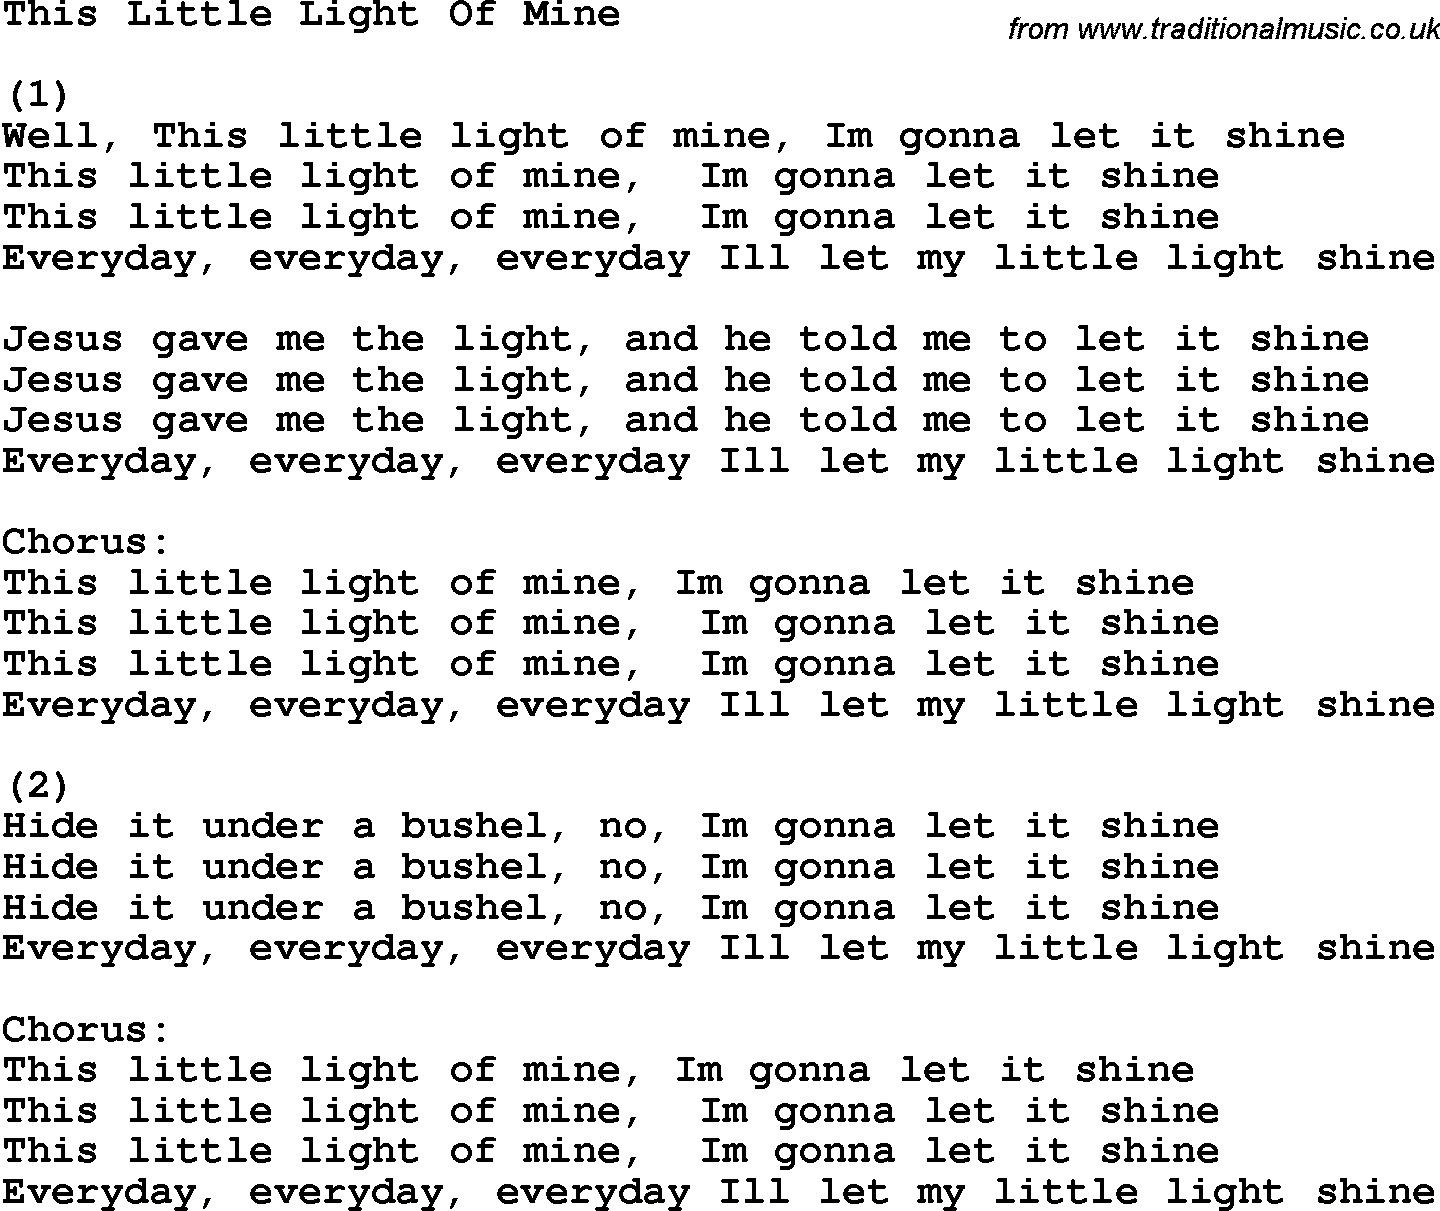 Free Printable Lyrics To This Little Light Of Mine